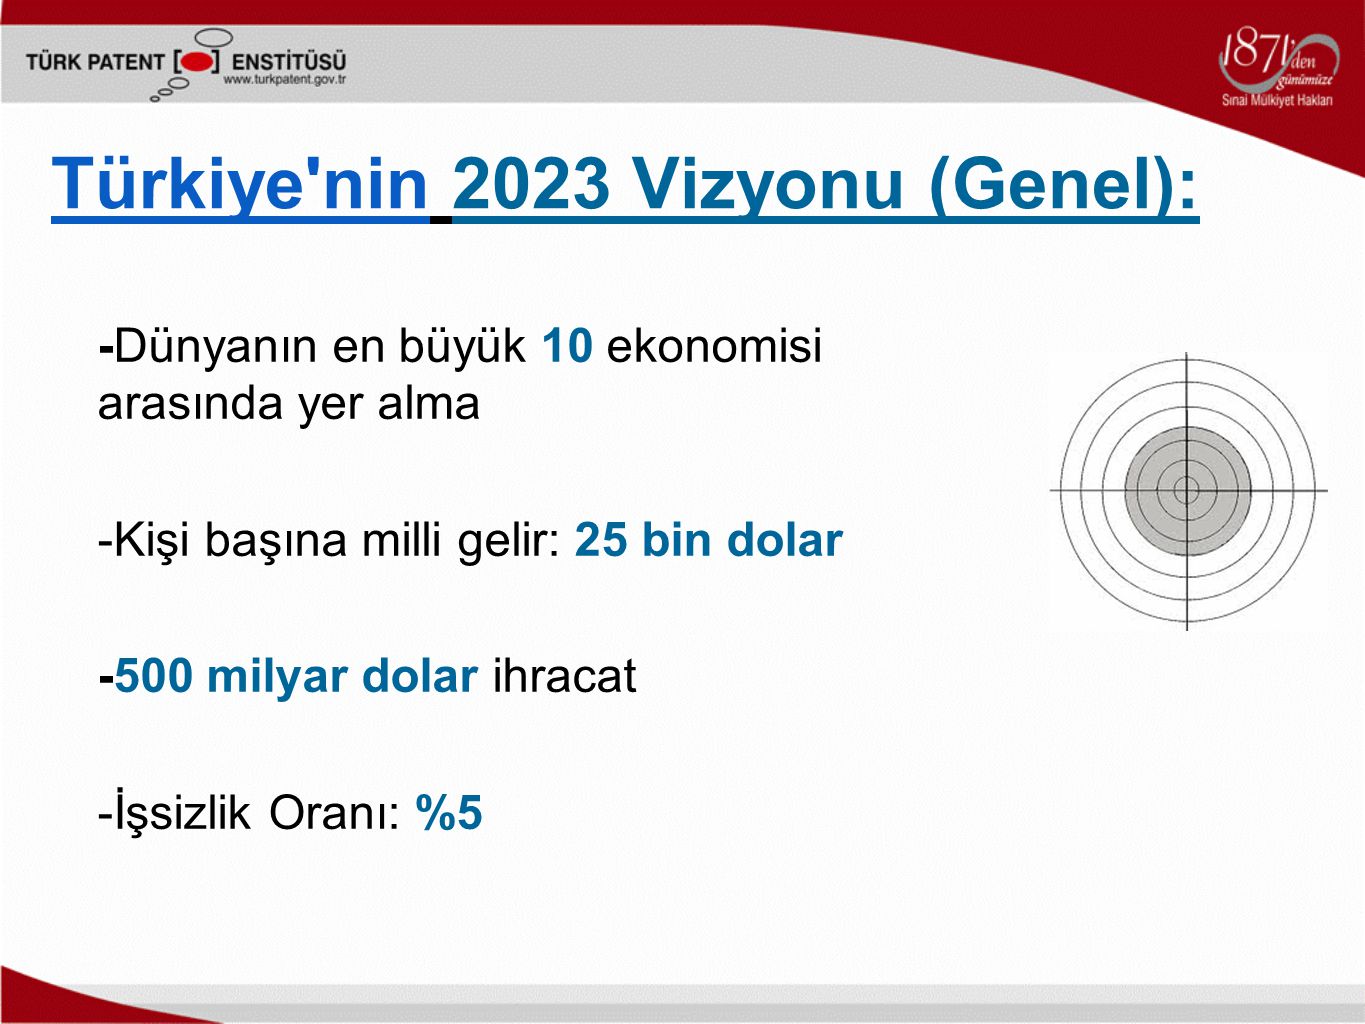 Türkiye nin 2023 Vizyonu (Genel): -Dünyanın en büyük 10 ekonomisi arasında yer alma -Kişi başına milli gelir: 25 bin dolar -500 milyar dolar ihracat -İşsizlik Oranı: %5